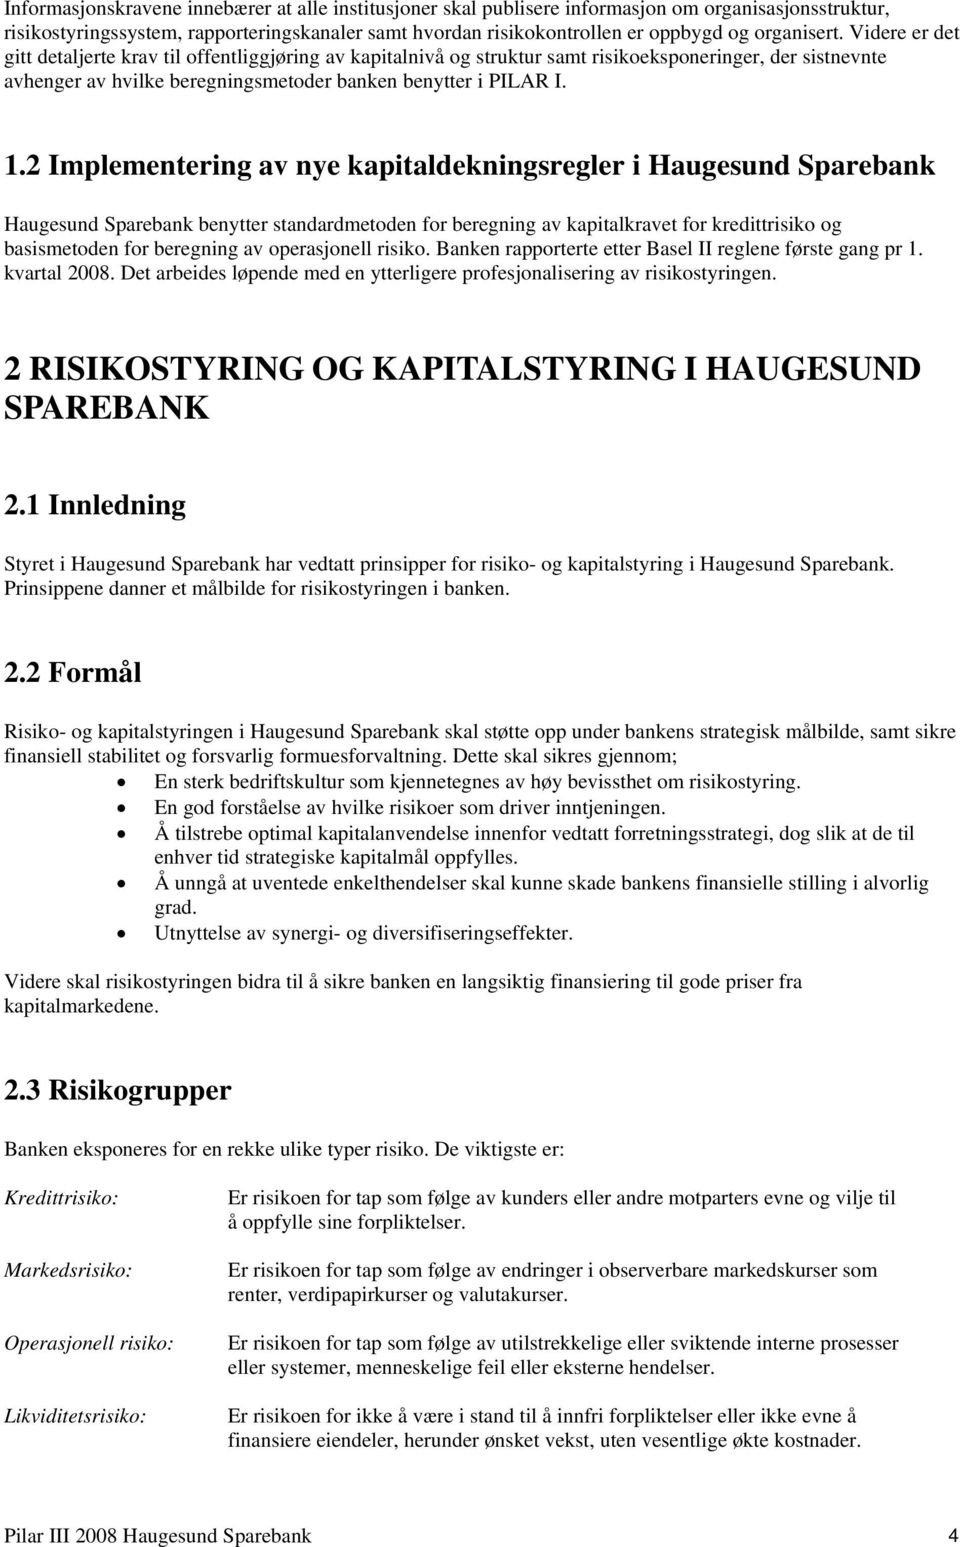 1.2 Implementering av nye kapitaldekningsregler i Haugesund Sparebank Haugesund Sparebank benytter standardmetoden for beregning av kapitalkravet for kredittrisiko og basismetoden for beregning av